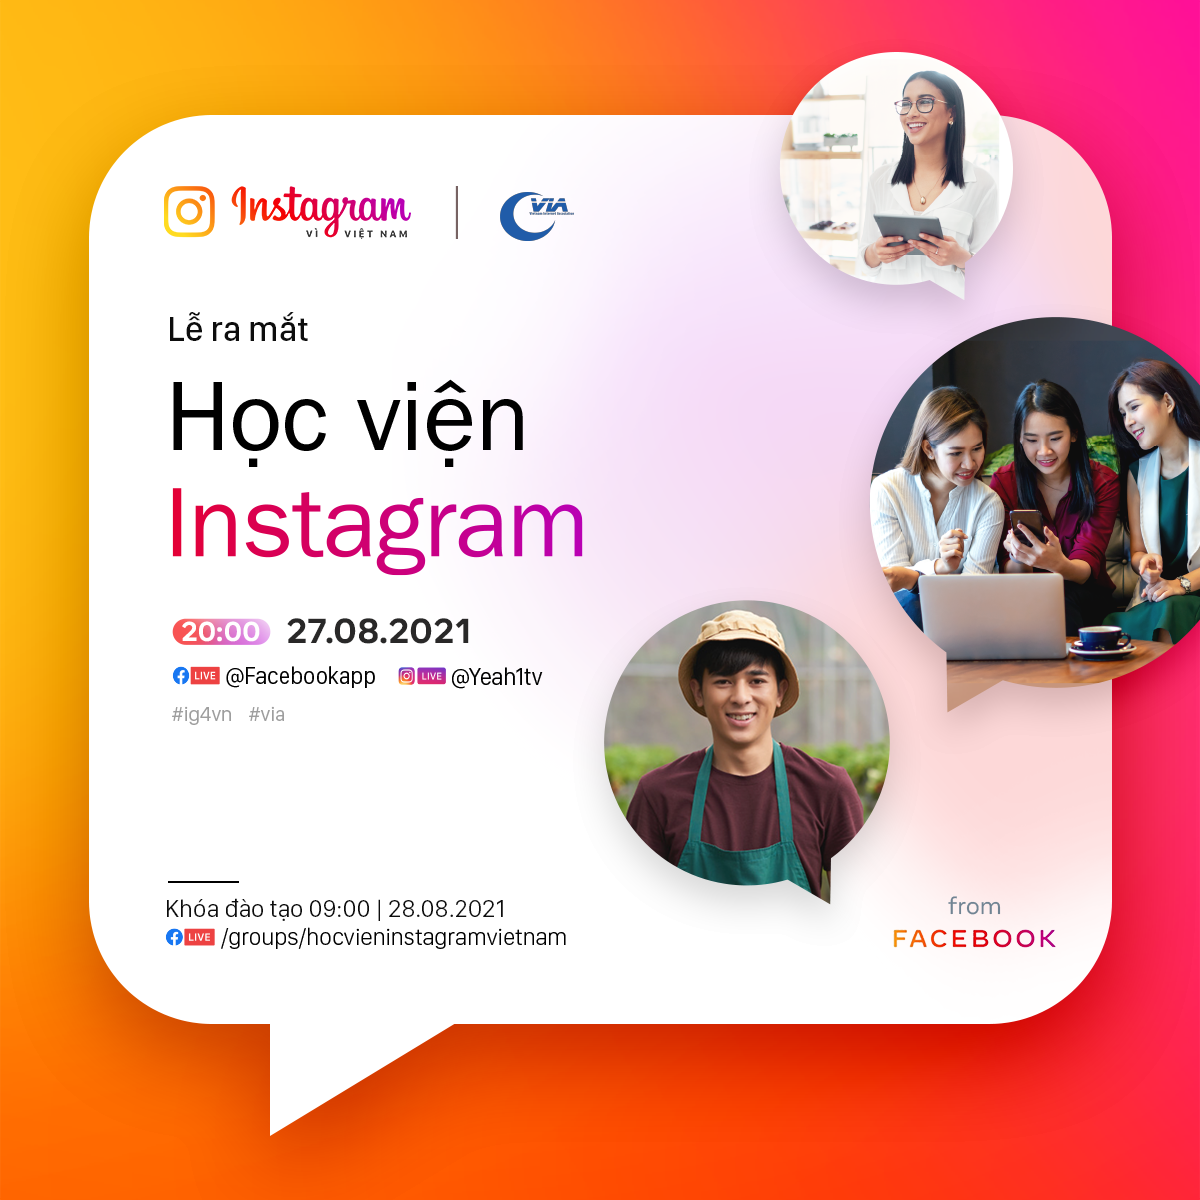 Cộng đồng khởi nghiệp háo hức đăng ký tham gia chương trình “Học viện Instagram